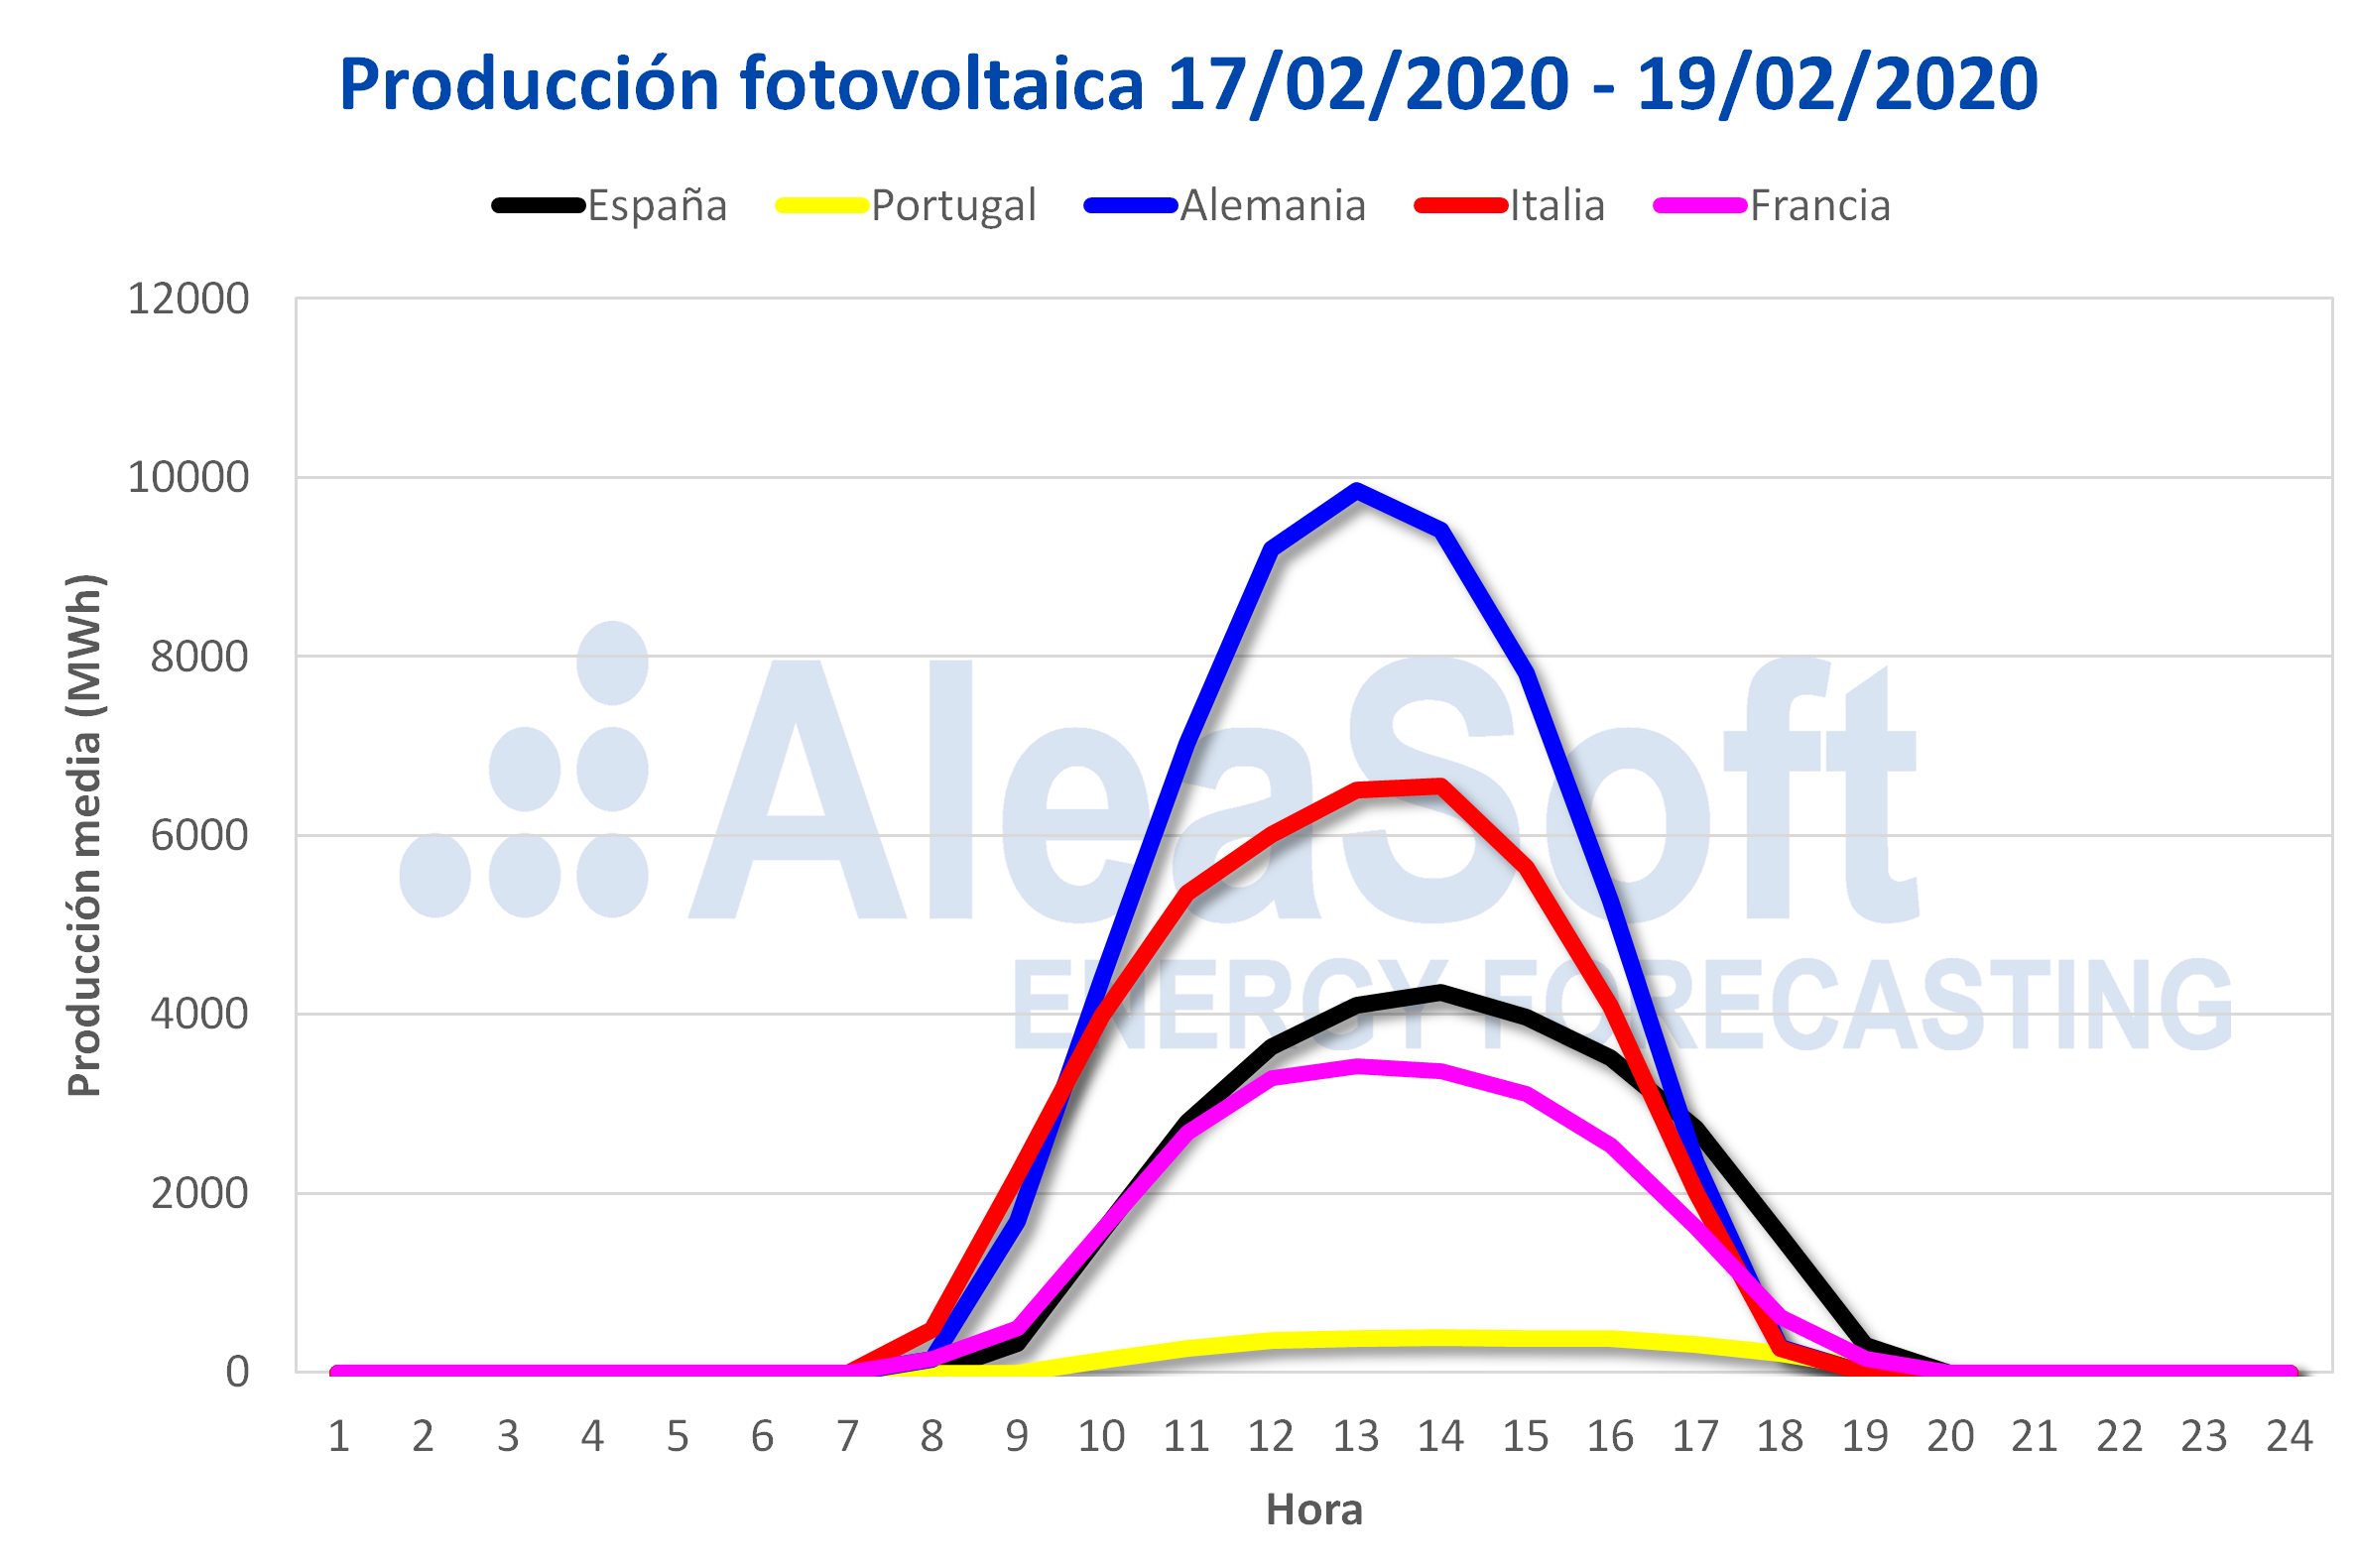 AleaSoft - Perfil produccion solar fotovoltaica Europa